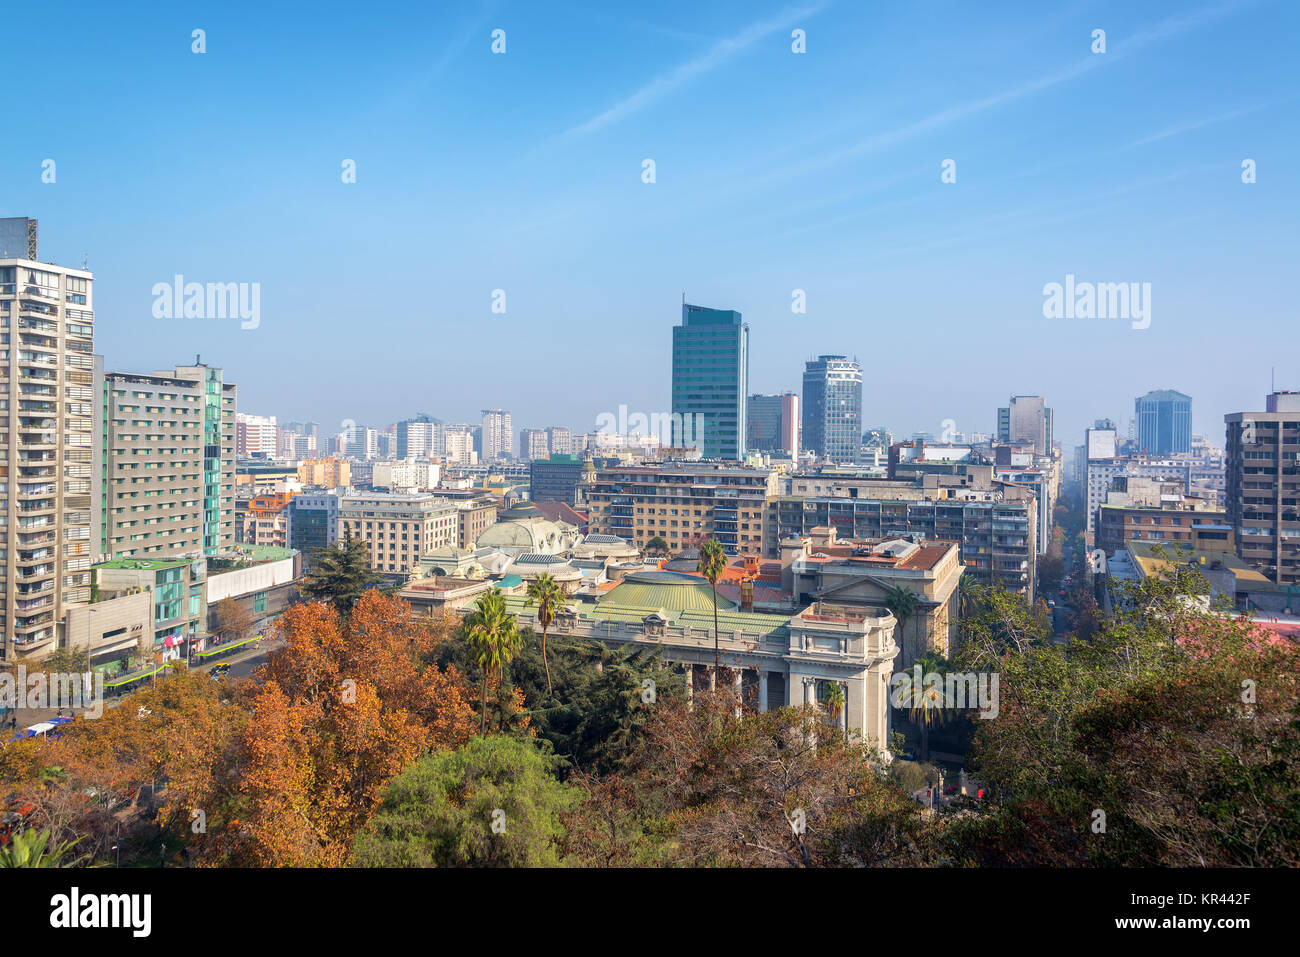 Cityscape of Santiago, Chile Stock Photo